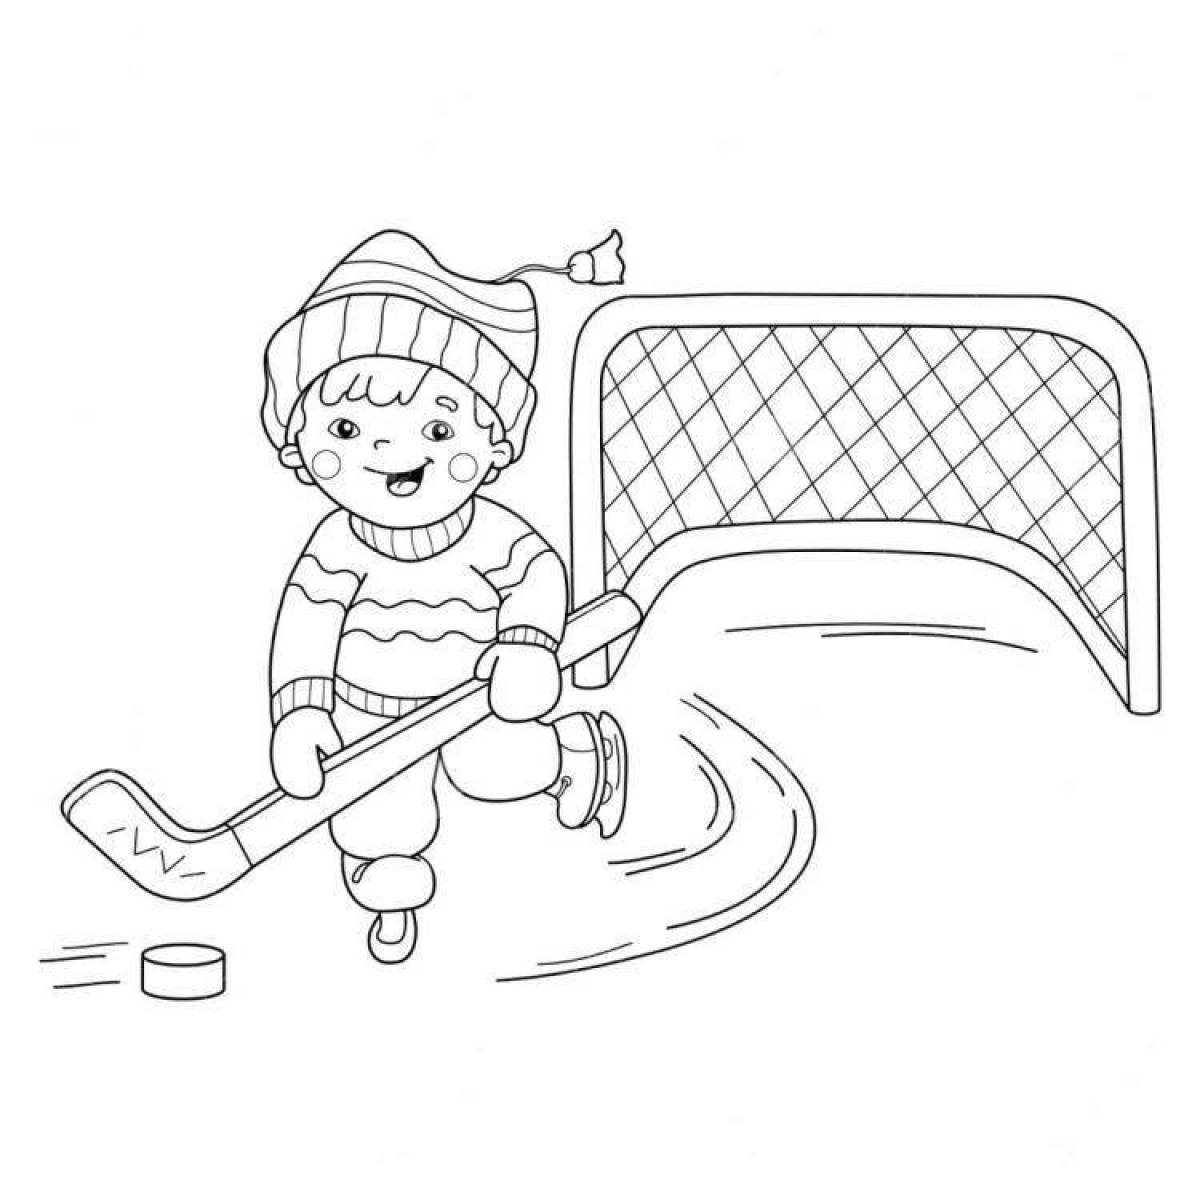 Joyful picture of winter sports for children in kindergarten